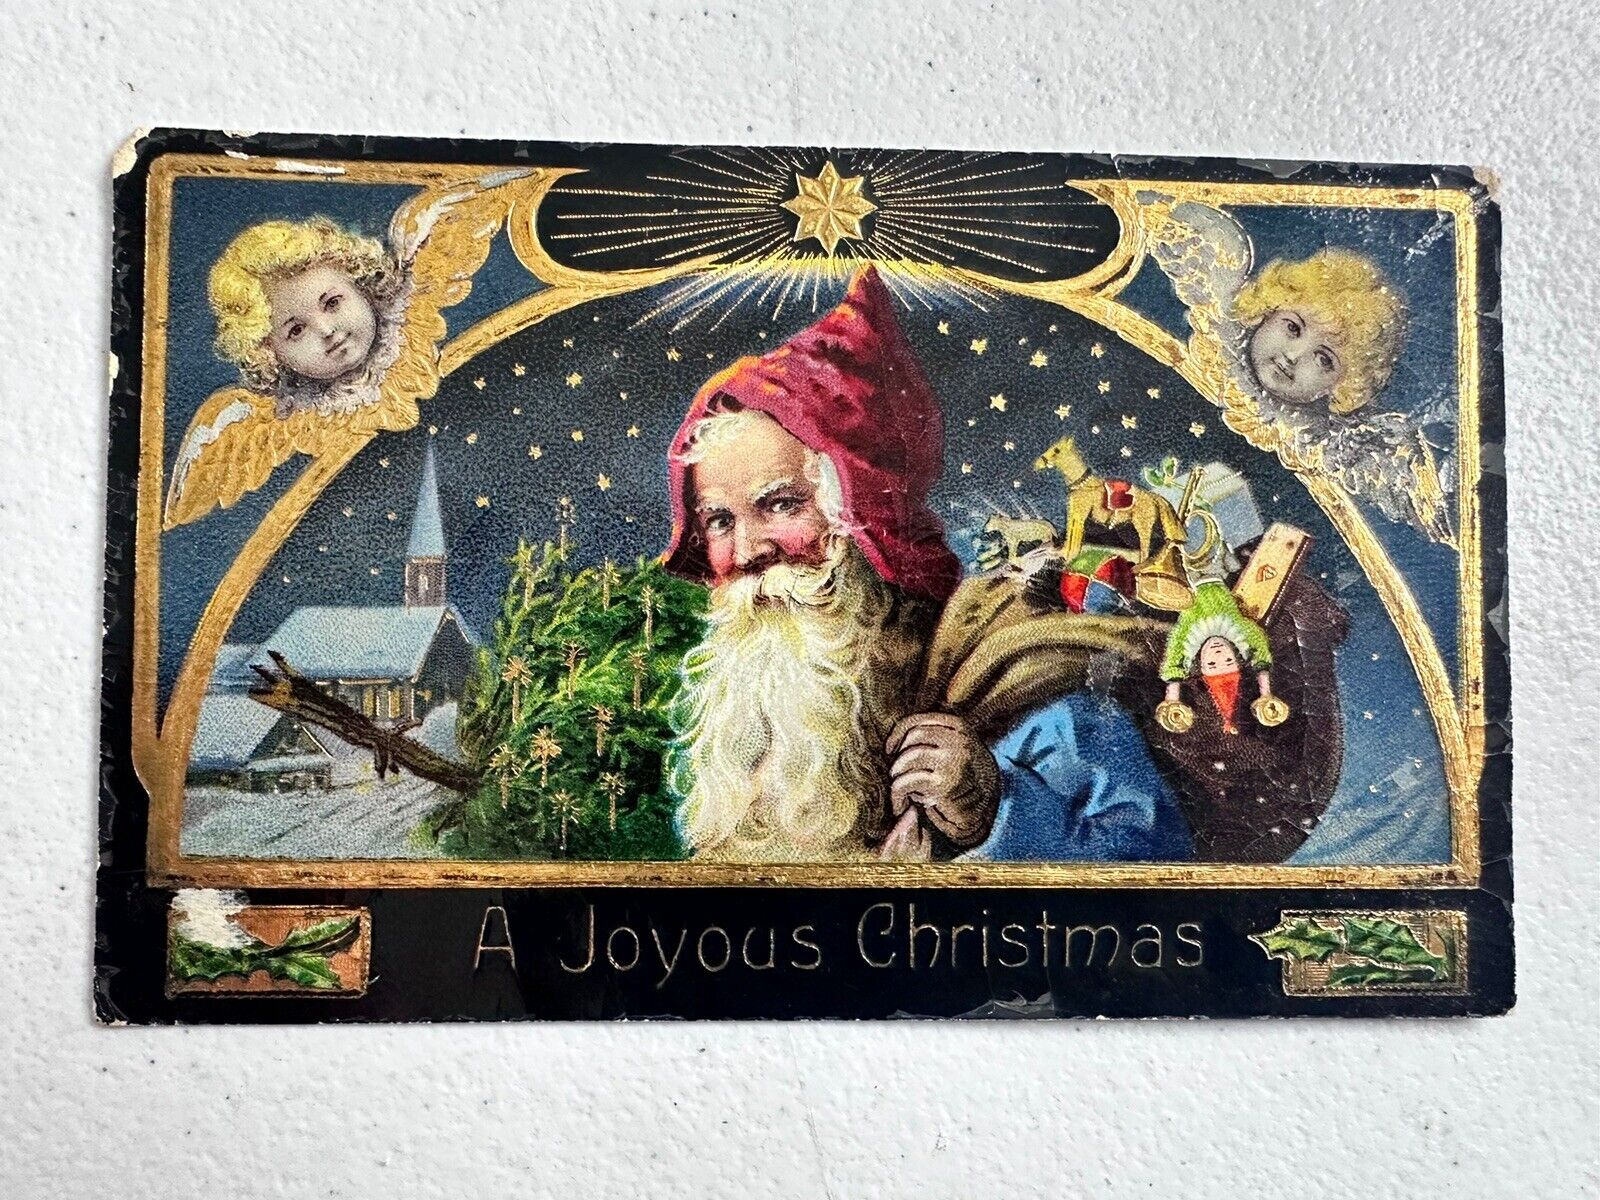 Rare Blue Coat Santa 1911 Christmas Postcard, Angels & Gold Stars, Collectible